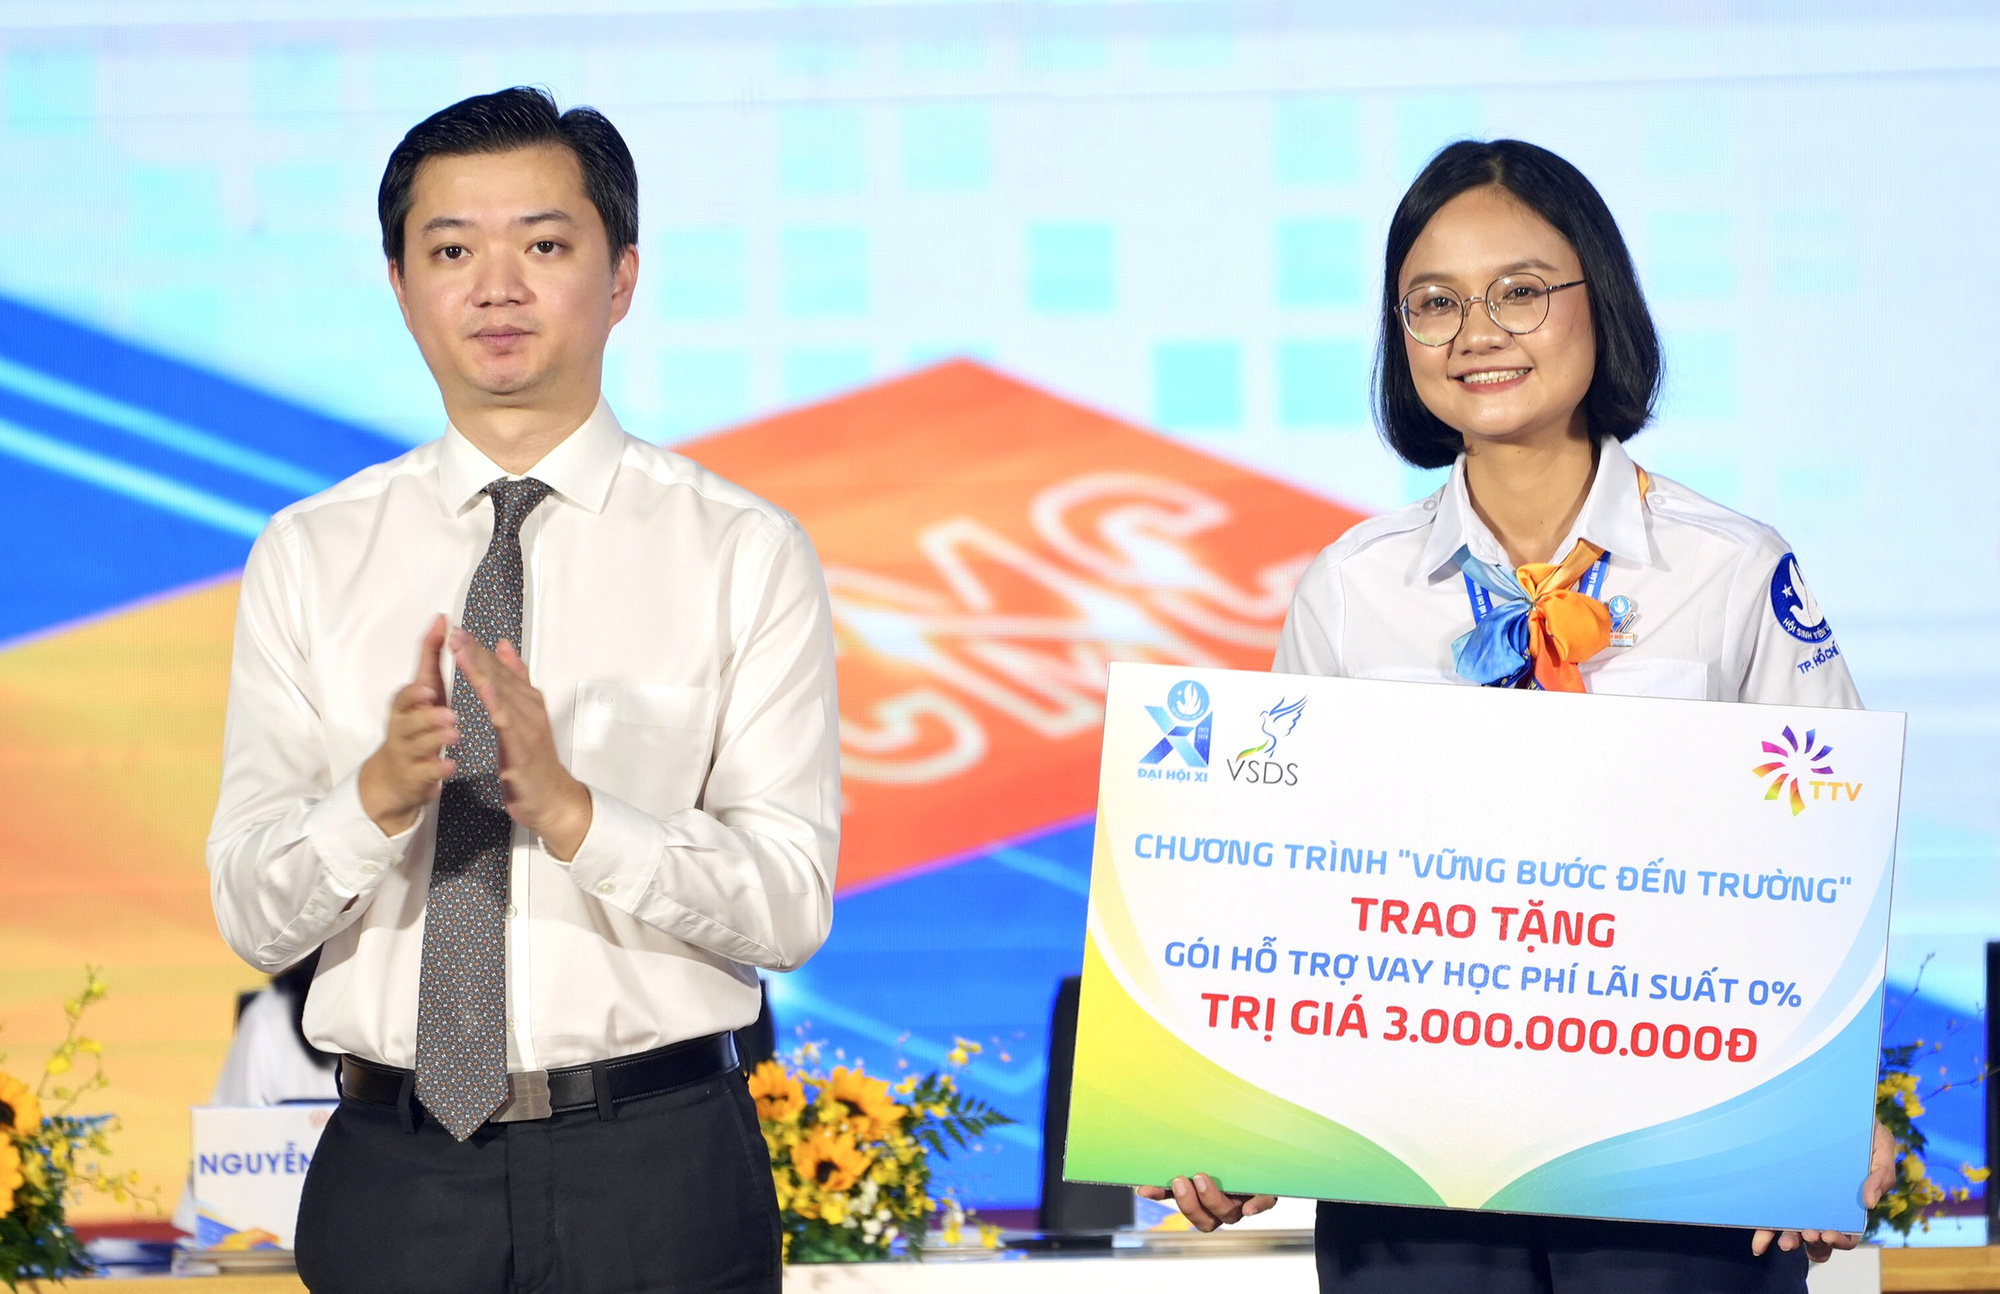 Chủ tịch Hội Sinh viên Việt Nam Nguyễn Minh Triết (trái) trao hỗ trợ  3 tỉ đổng để Hội Sinh viên TP.HCM triển khai gói hỗ trợ vay học phí  lãi suất 0% - Ảnh: HỮU HẠNH